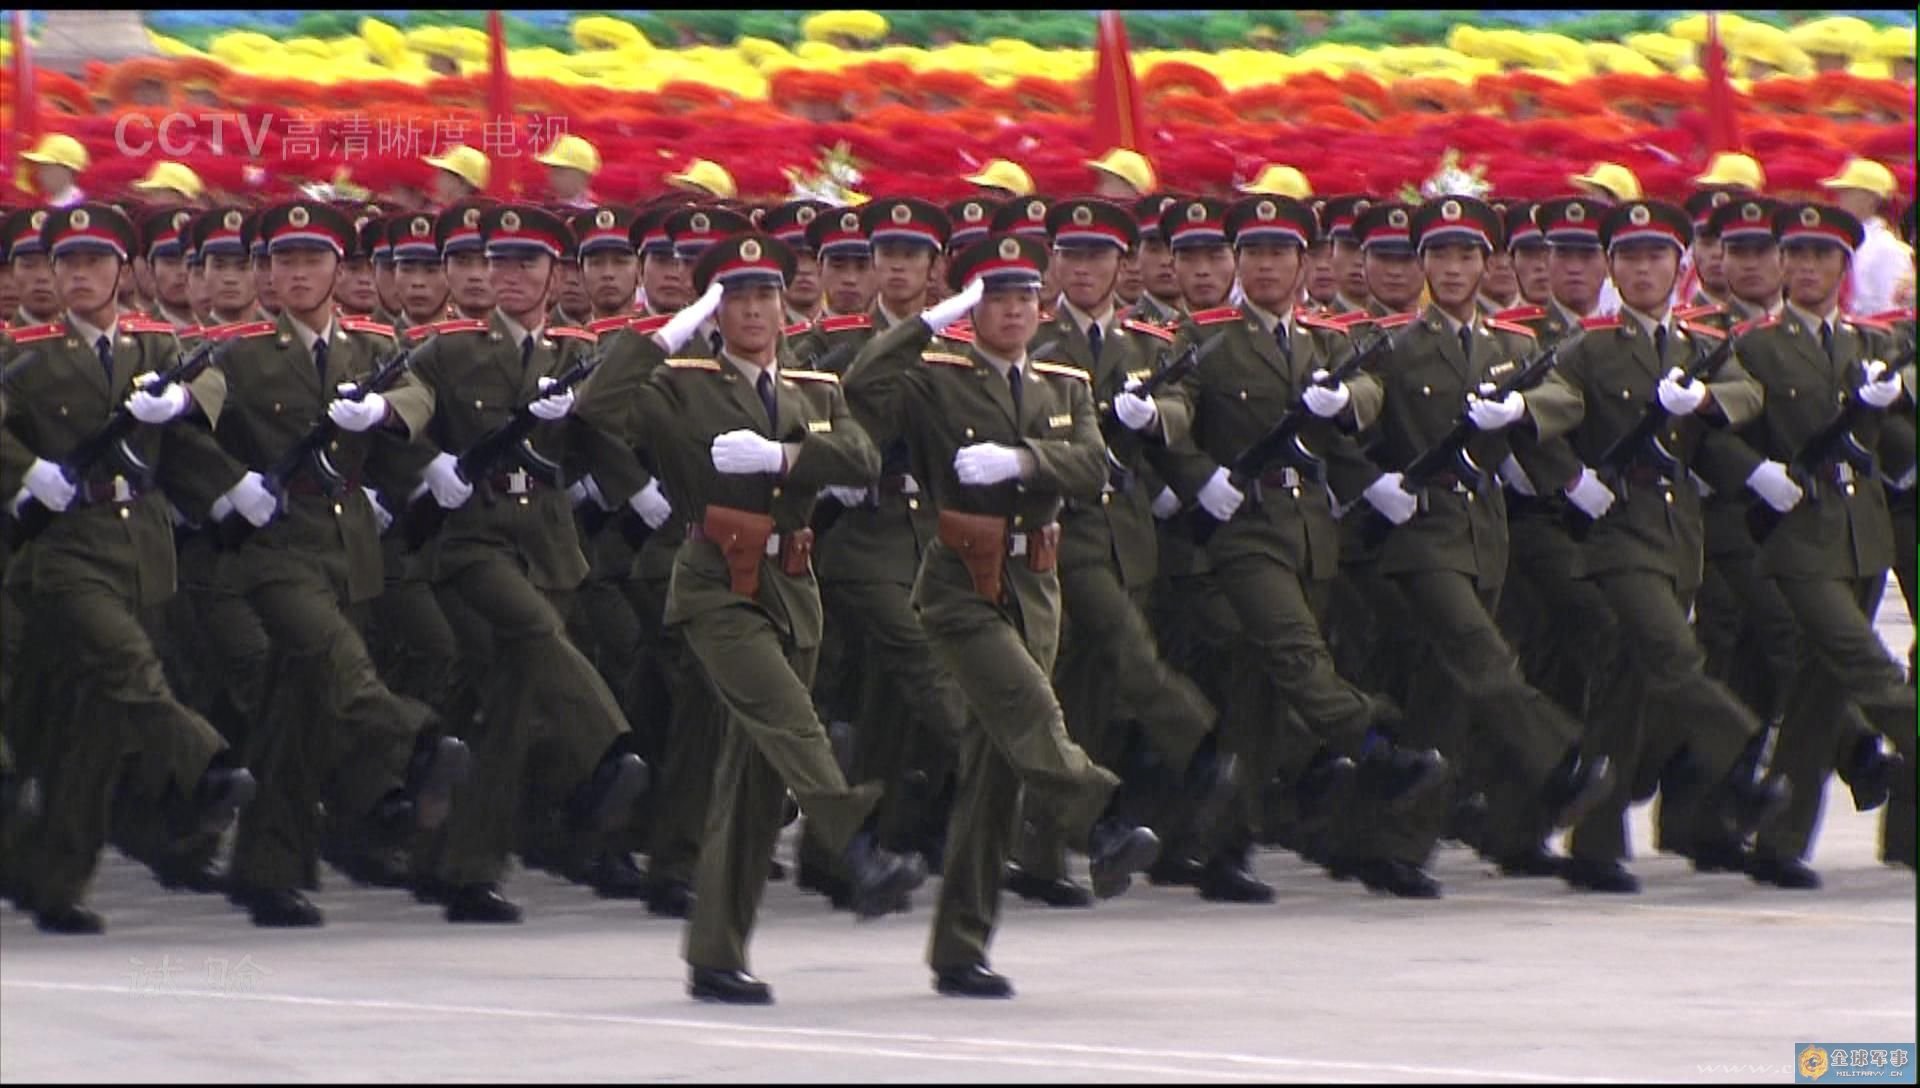 俄罗斯举行胜利日红场阅兵式，多位独联体国家领导人与普京共同阅兵并向烈士墓献花